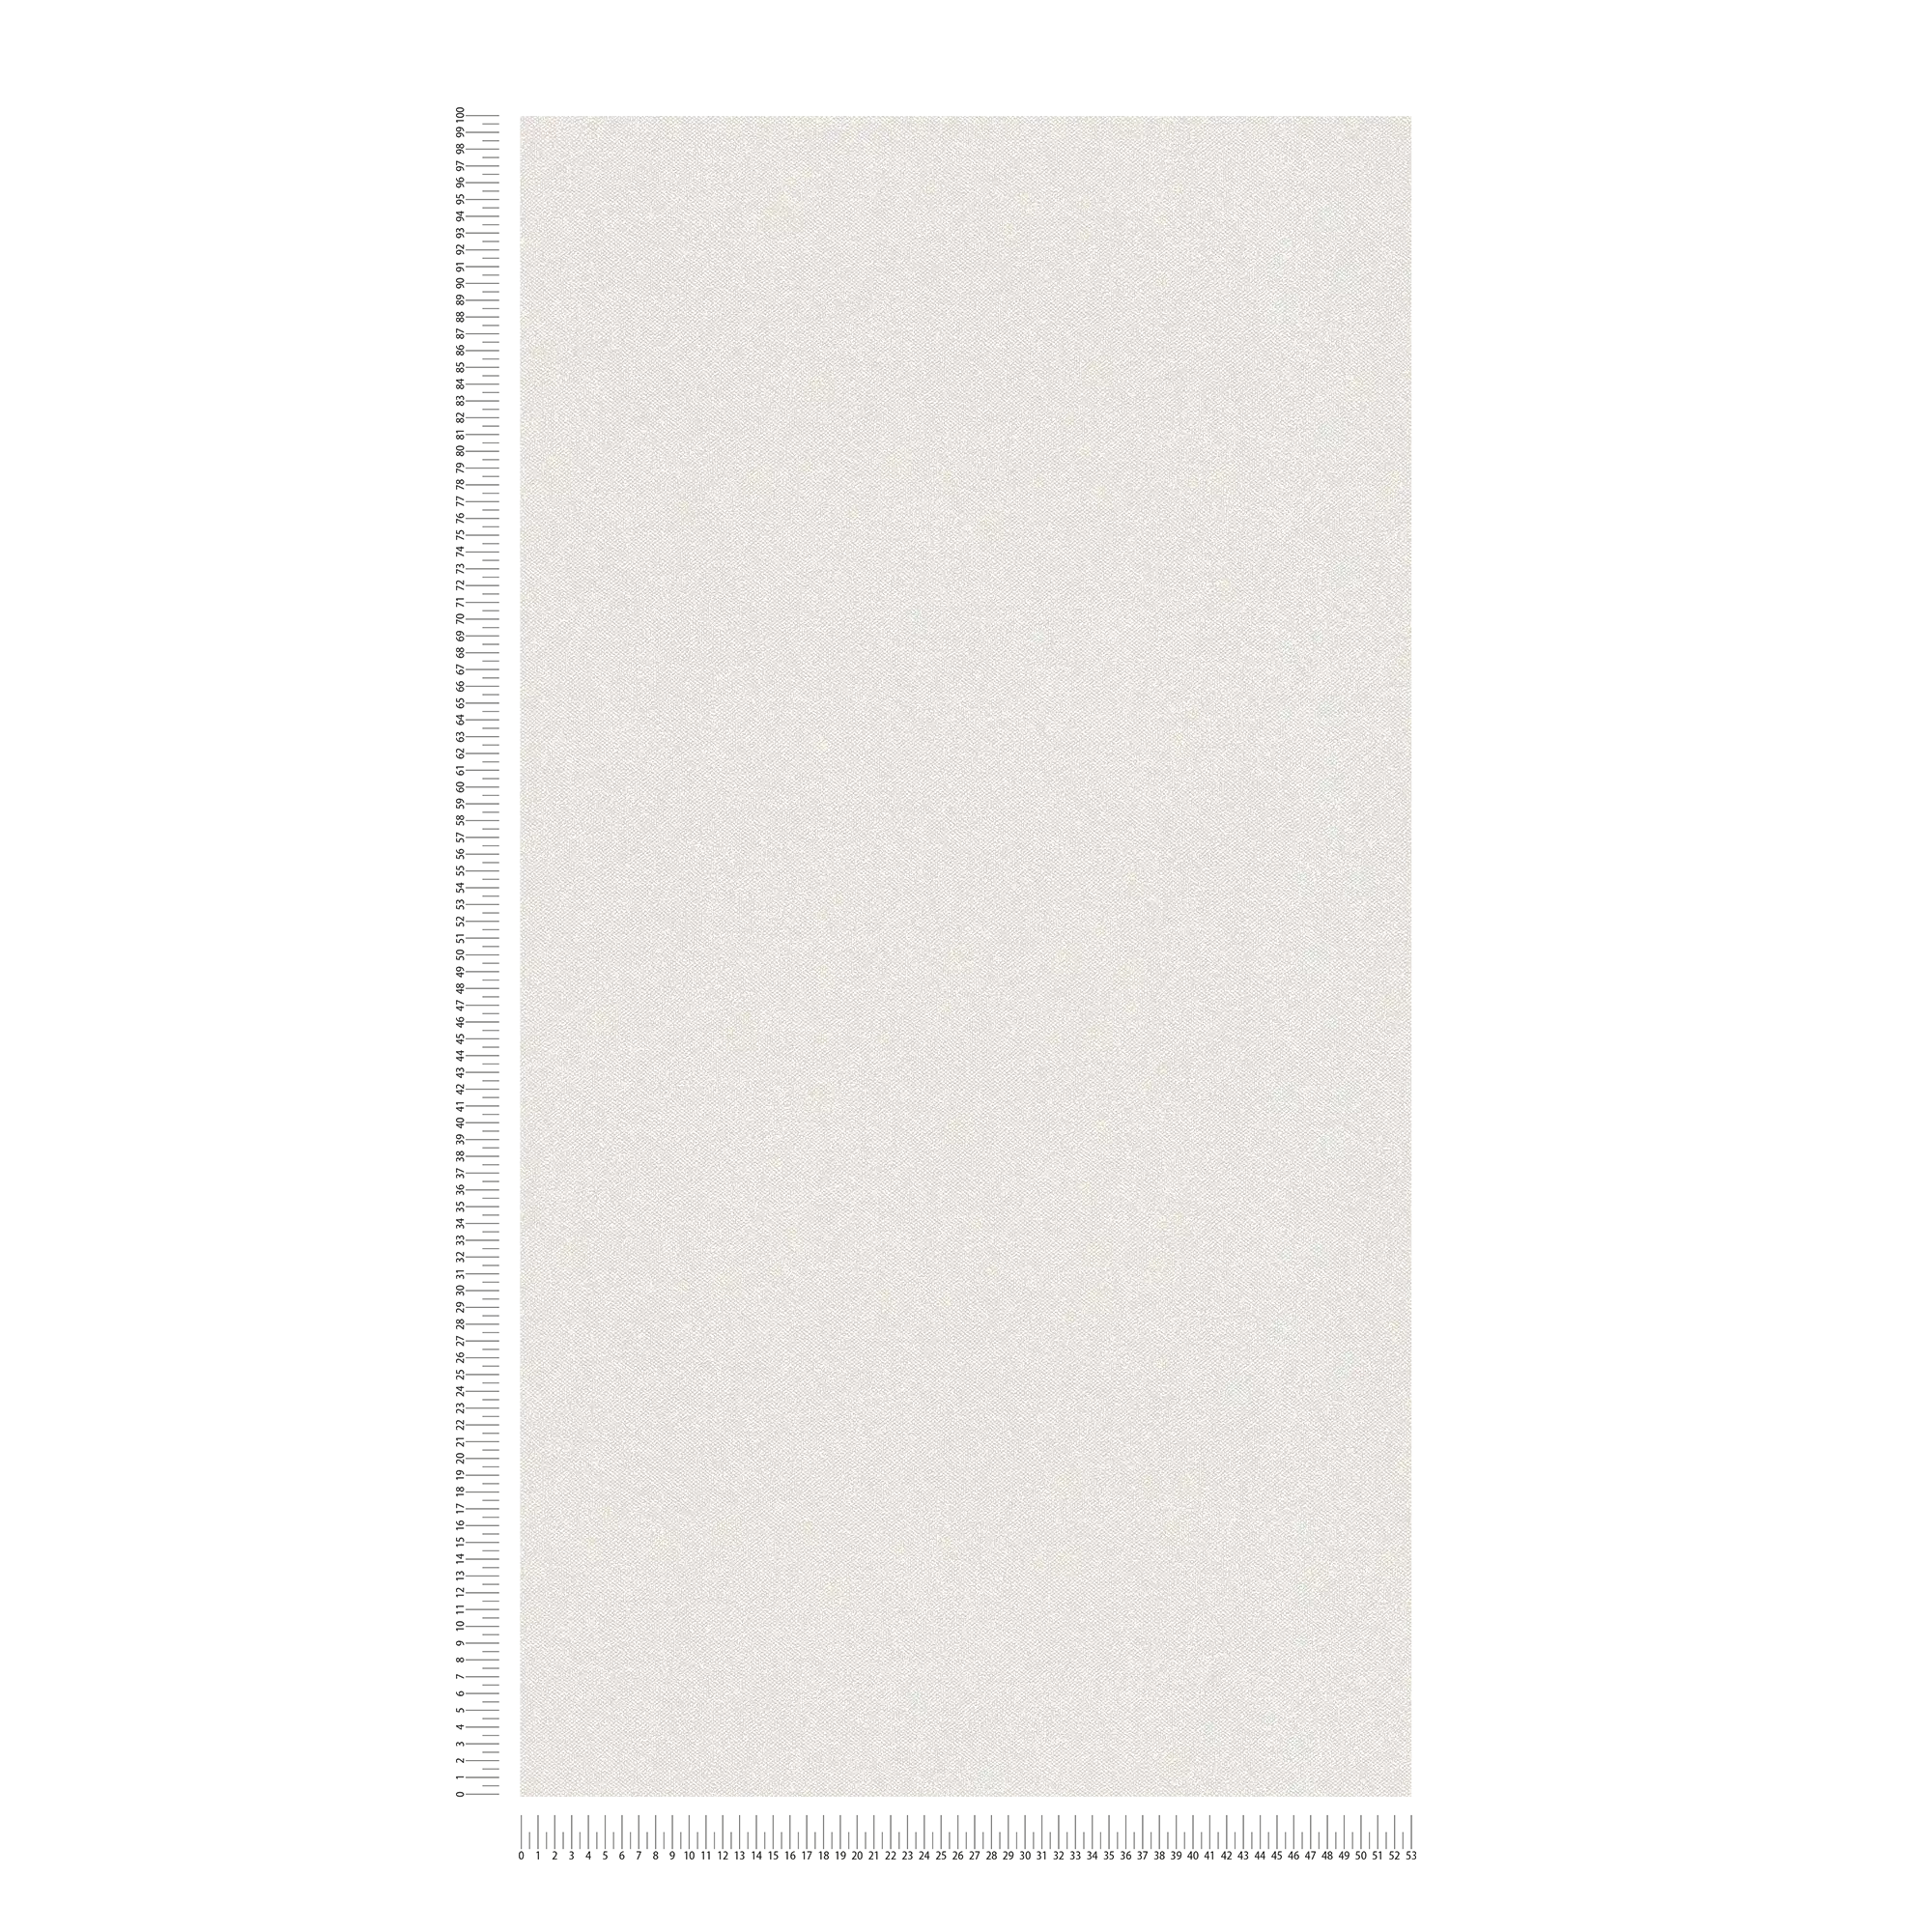             Papier peint structuré uni imitation lin - crème, gris, blanc
        